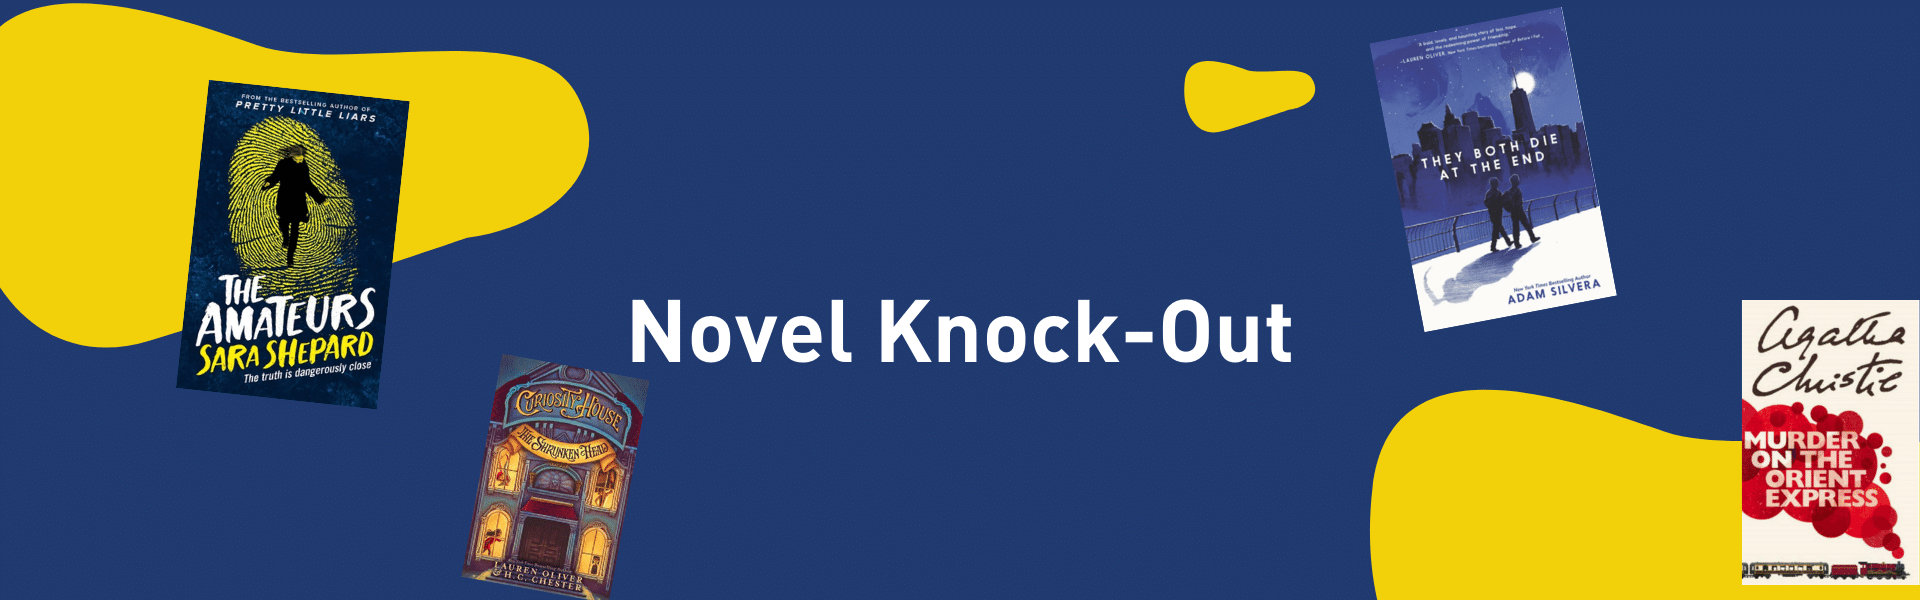 ISKL Novel Knock-Out Banner 2017